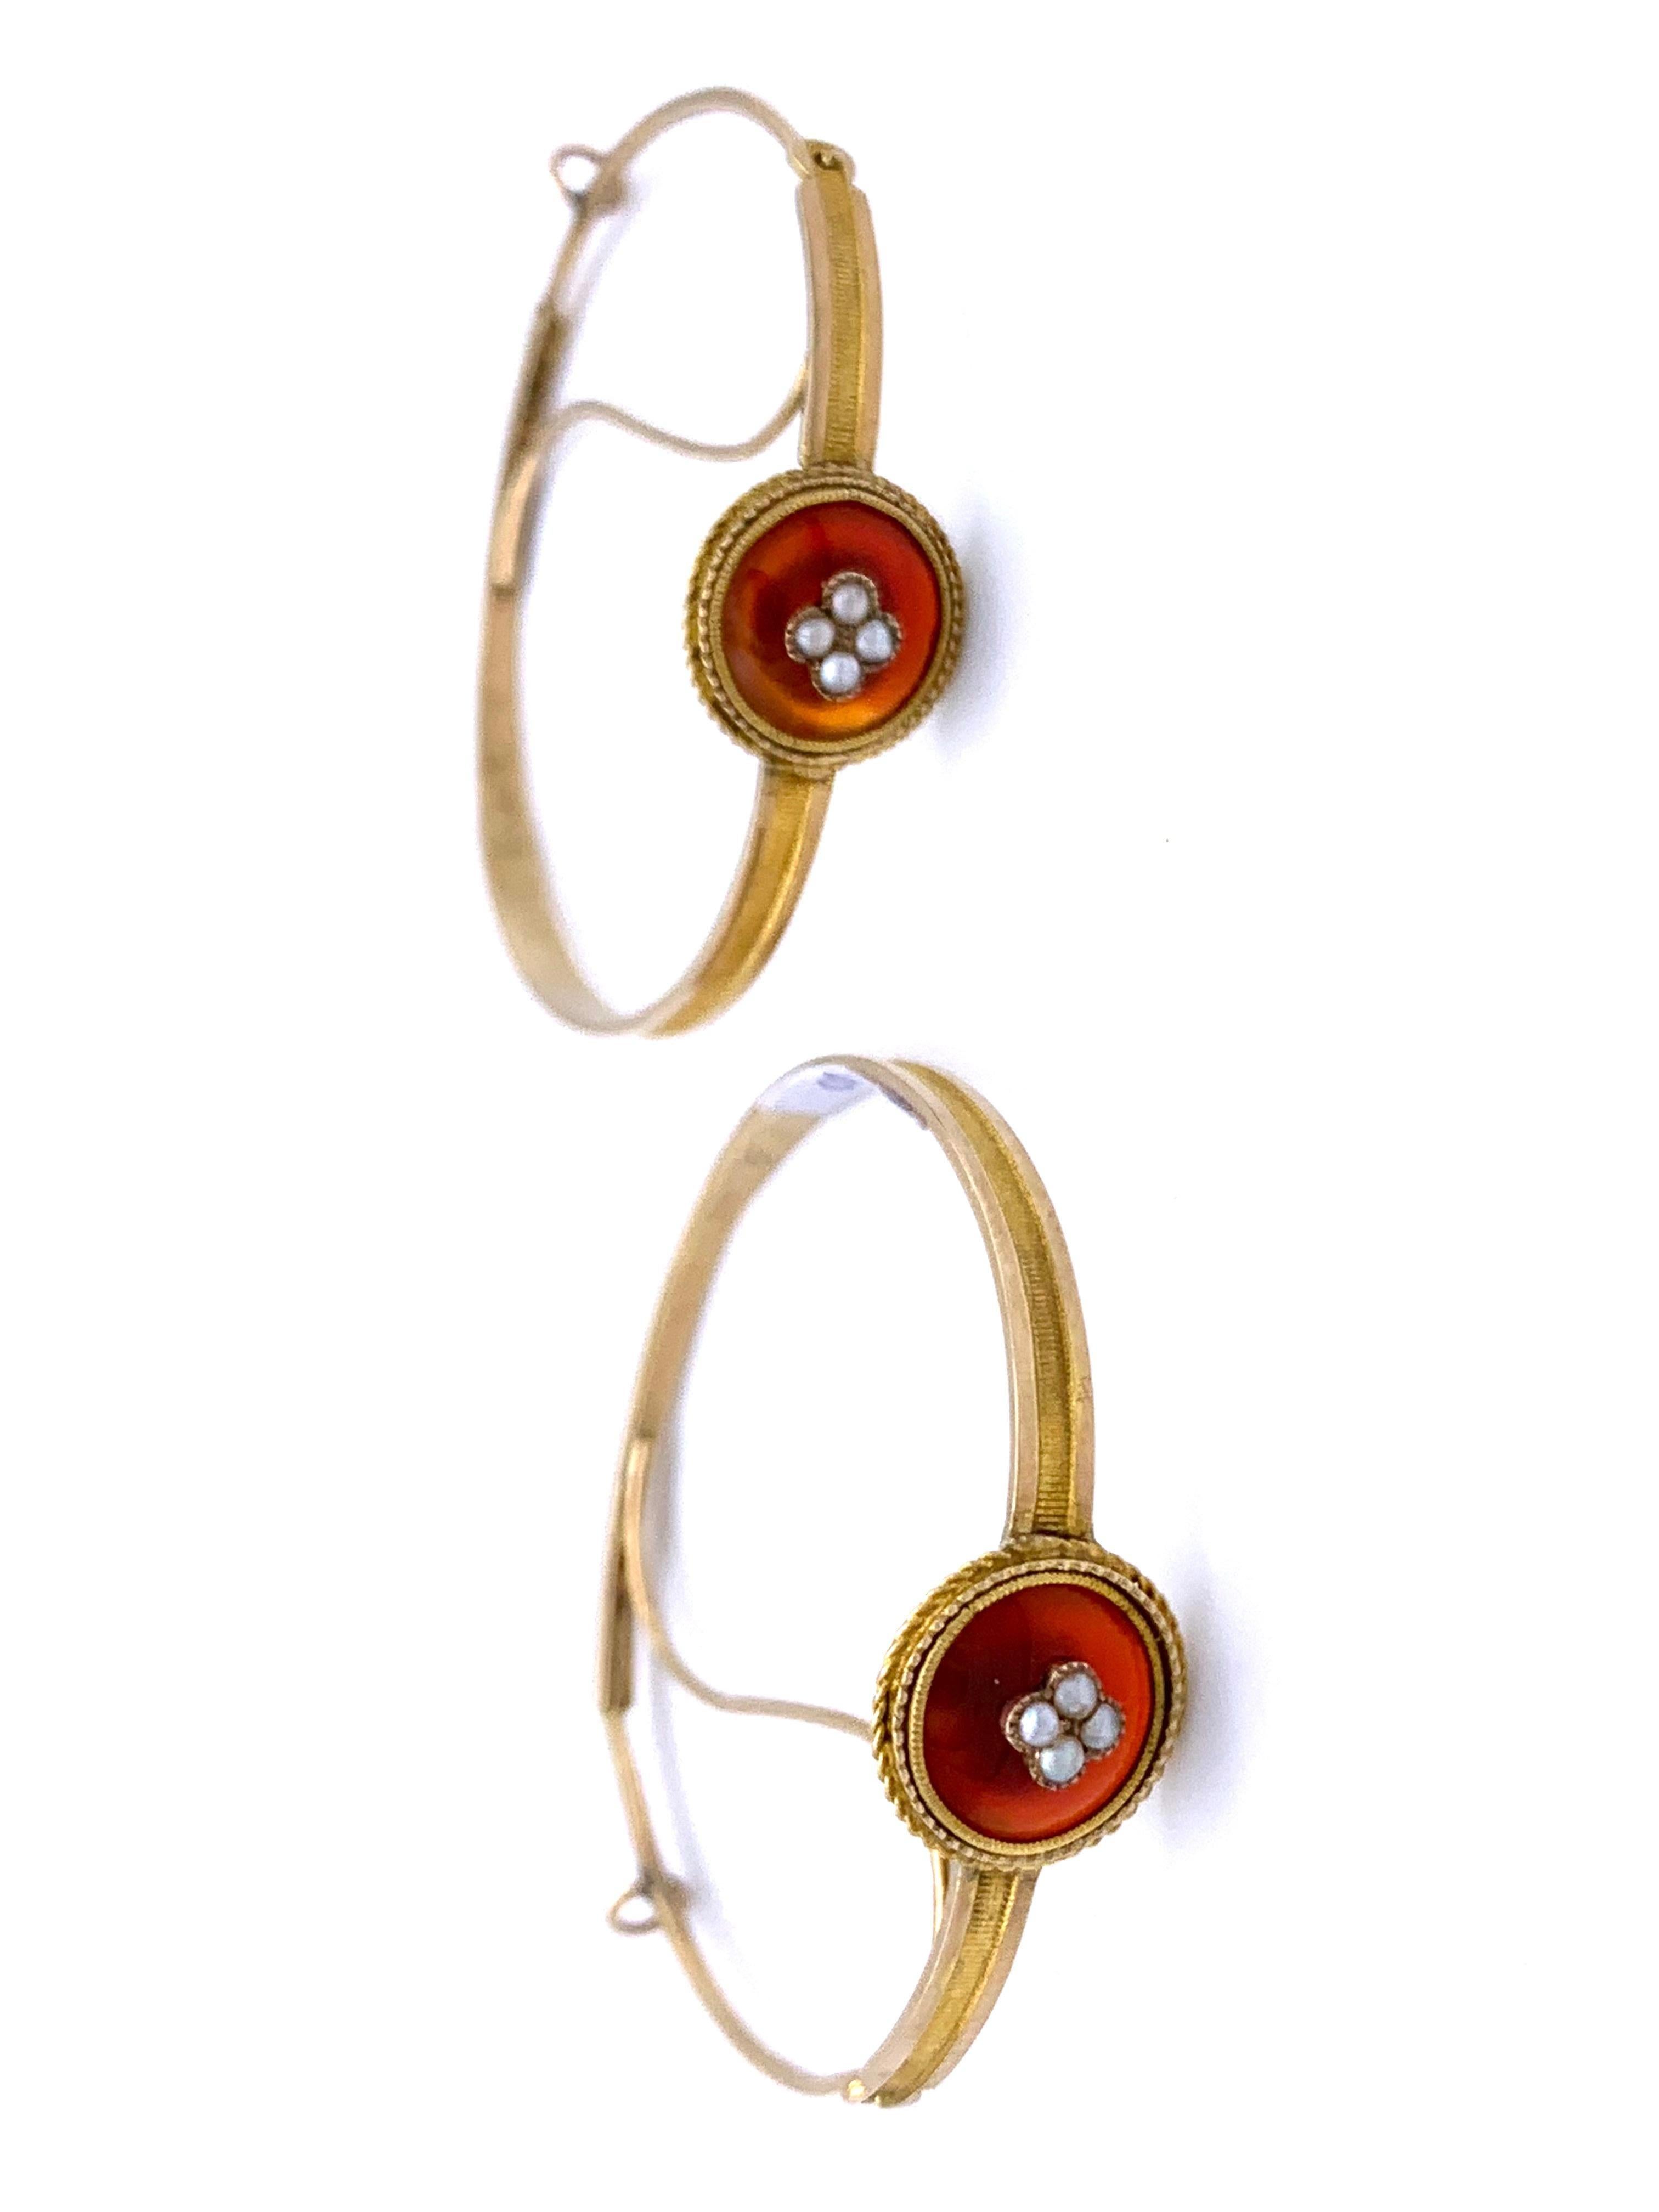 Ces très rares boucles d'oreilles en or Empire ont été fabriquées à la main en or 14 carats. Les arceaux sont décorés de fines lignes gravées. Chaque cerceau est embelli  avec un cabochon de cornaline monté en sertissage avec un fil d'or torsadé.